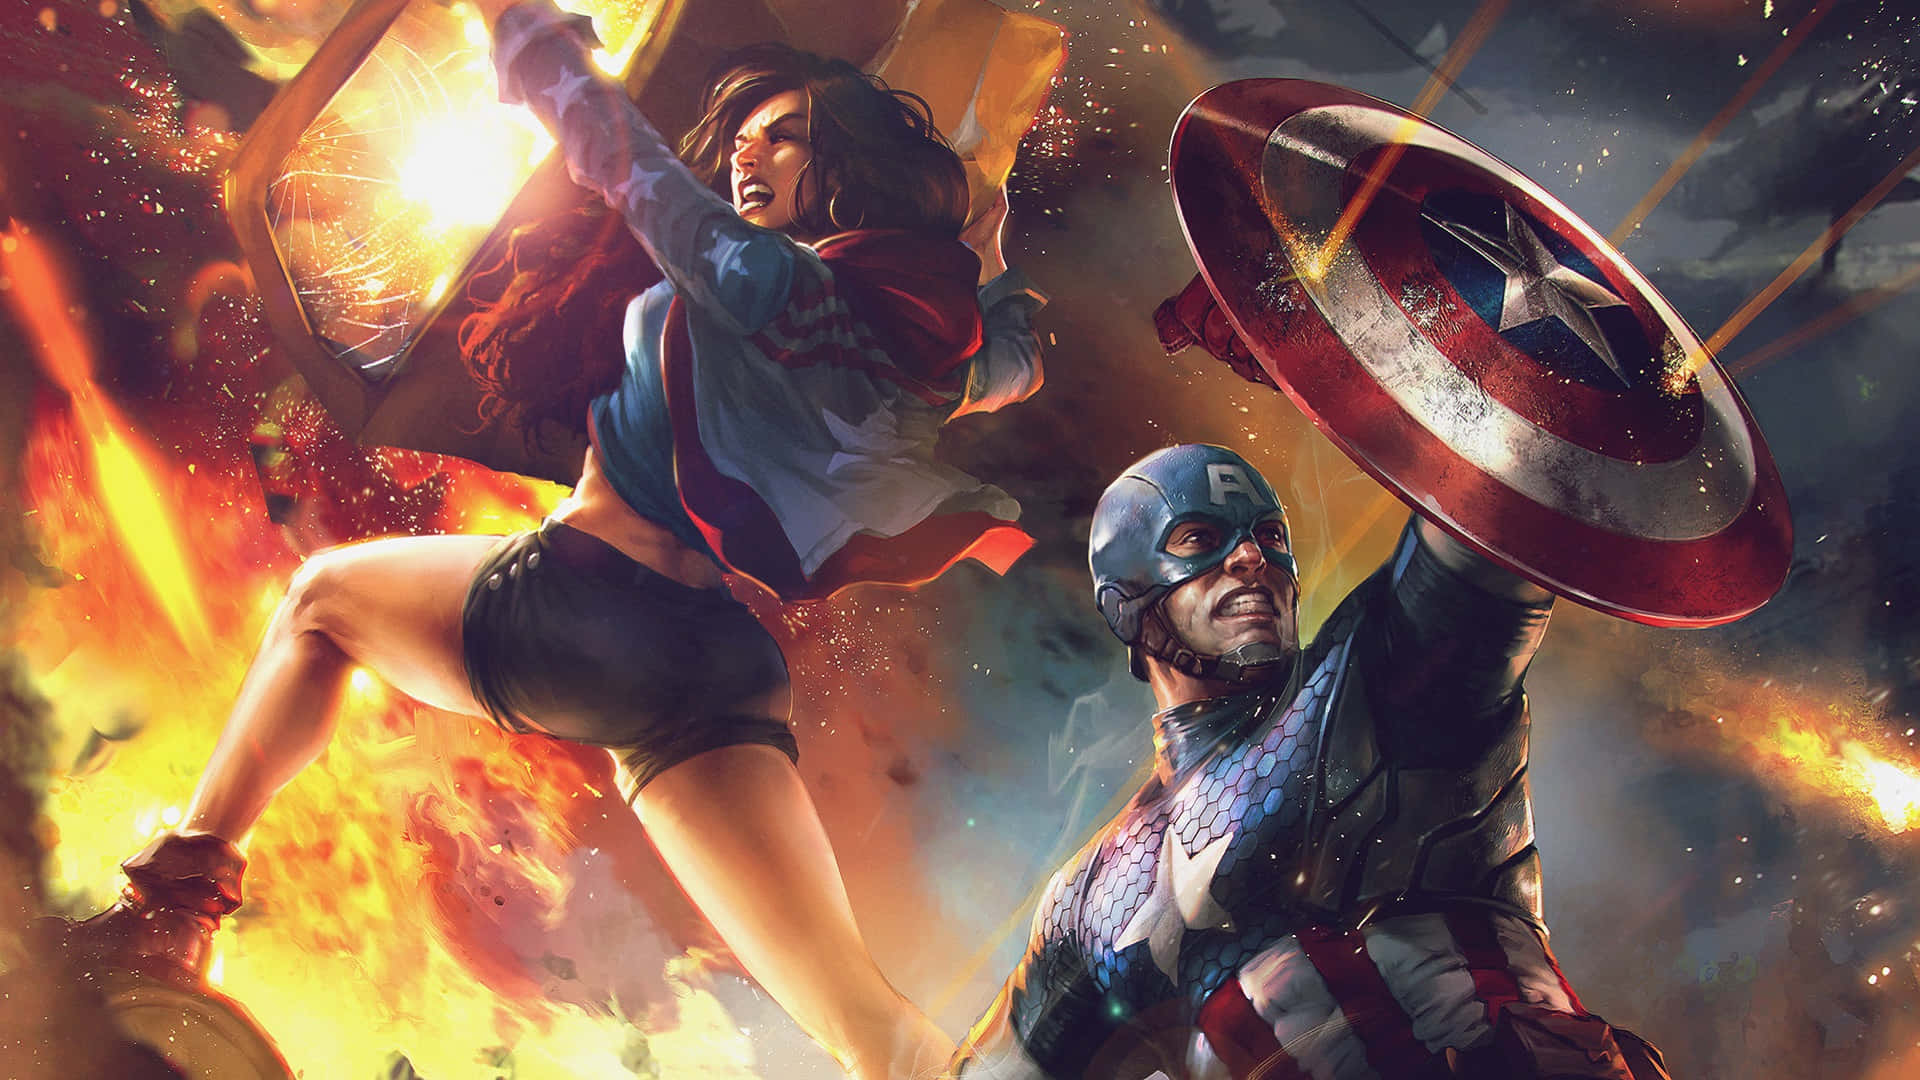 Erlebedie Action Von Captain America In Epischer Dual-screen-auflösung! Wallpaper